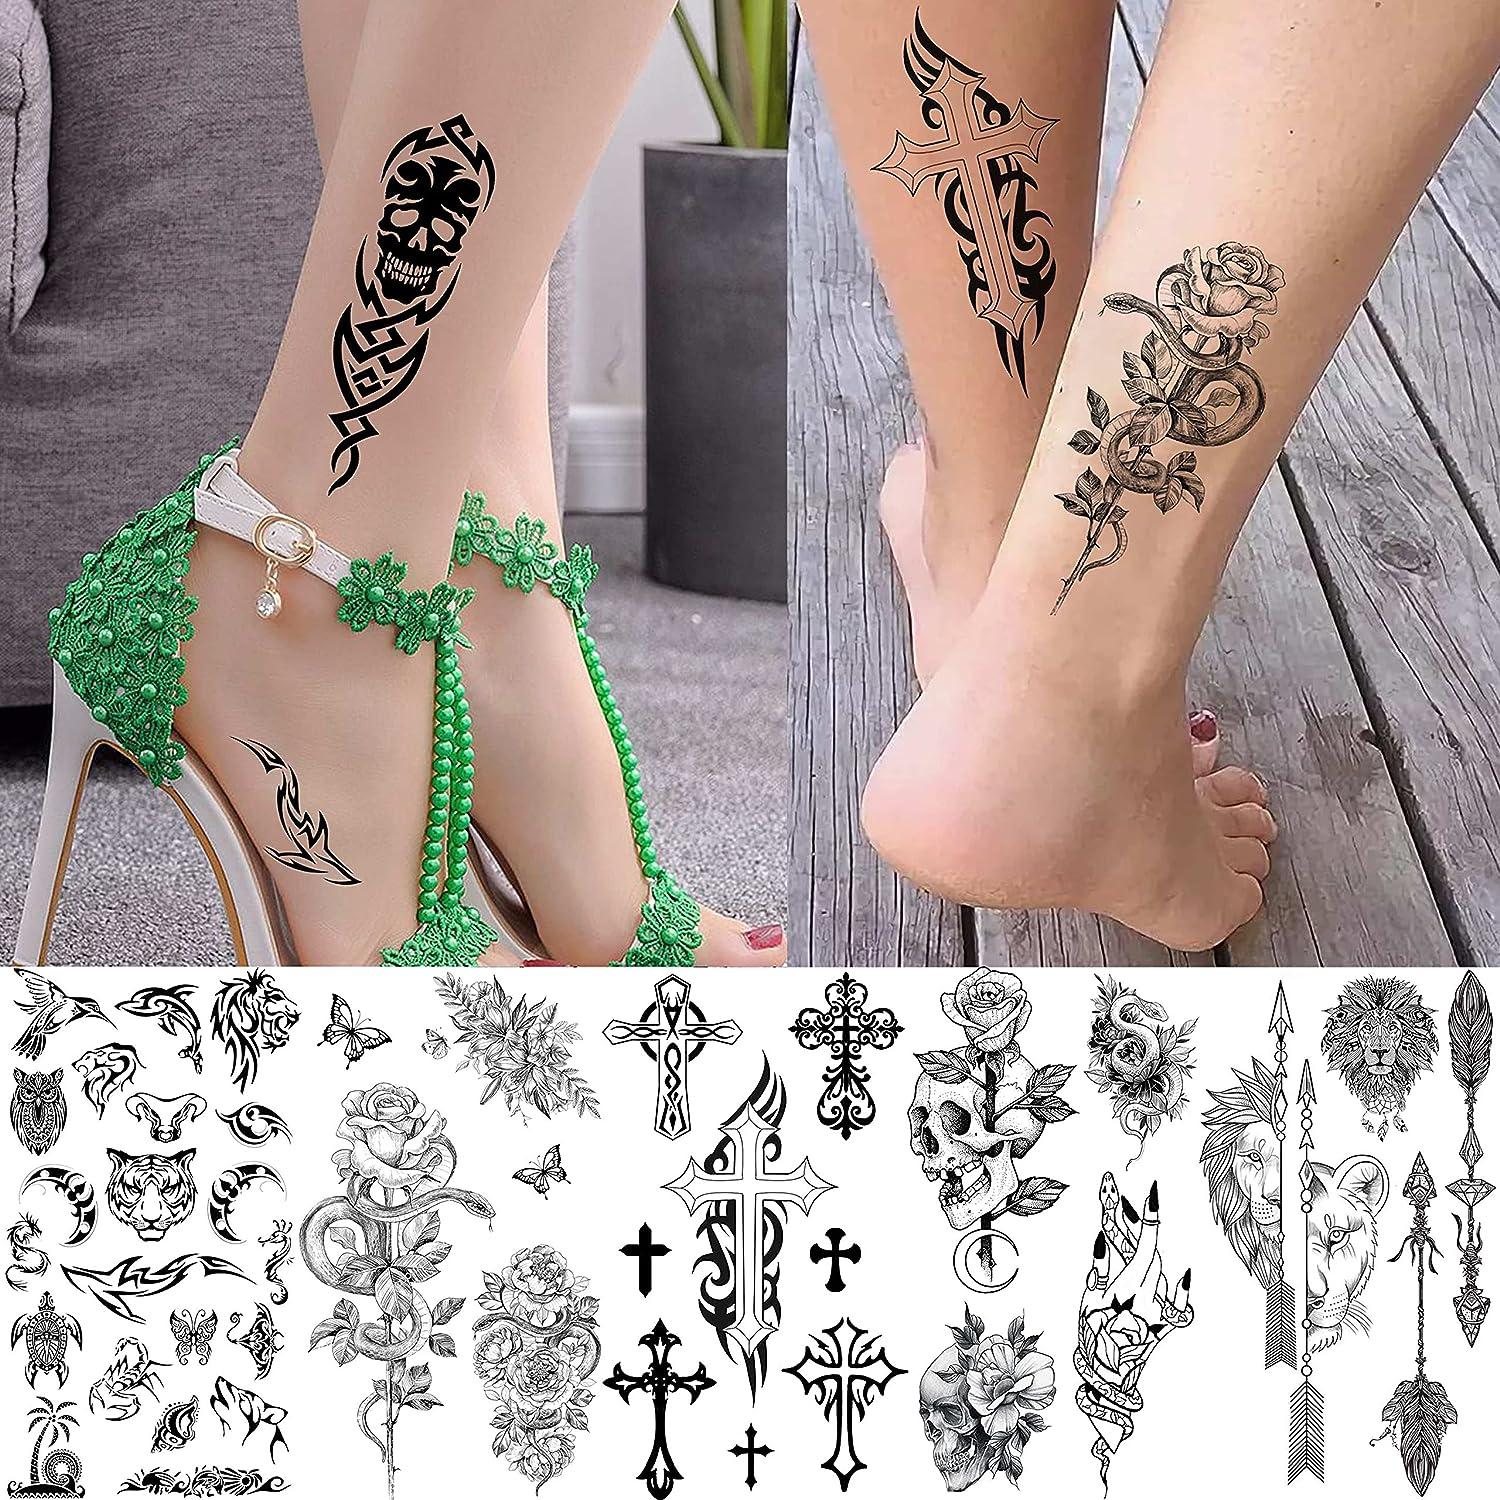 Design, Tattoos Adults Women Men Face Body Hand Finger Tattoo Sticker